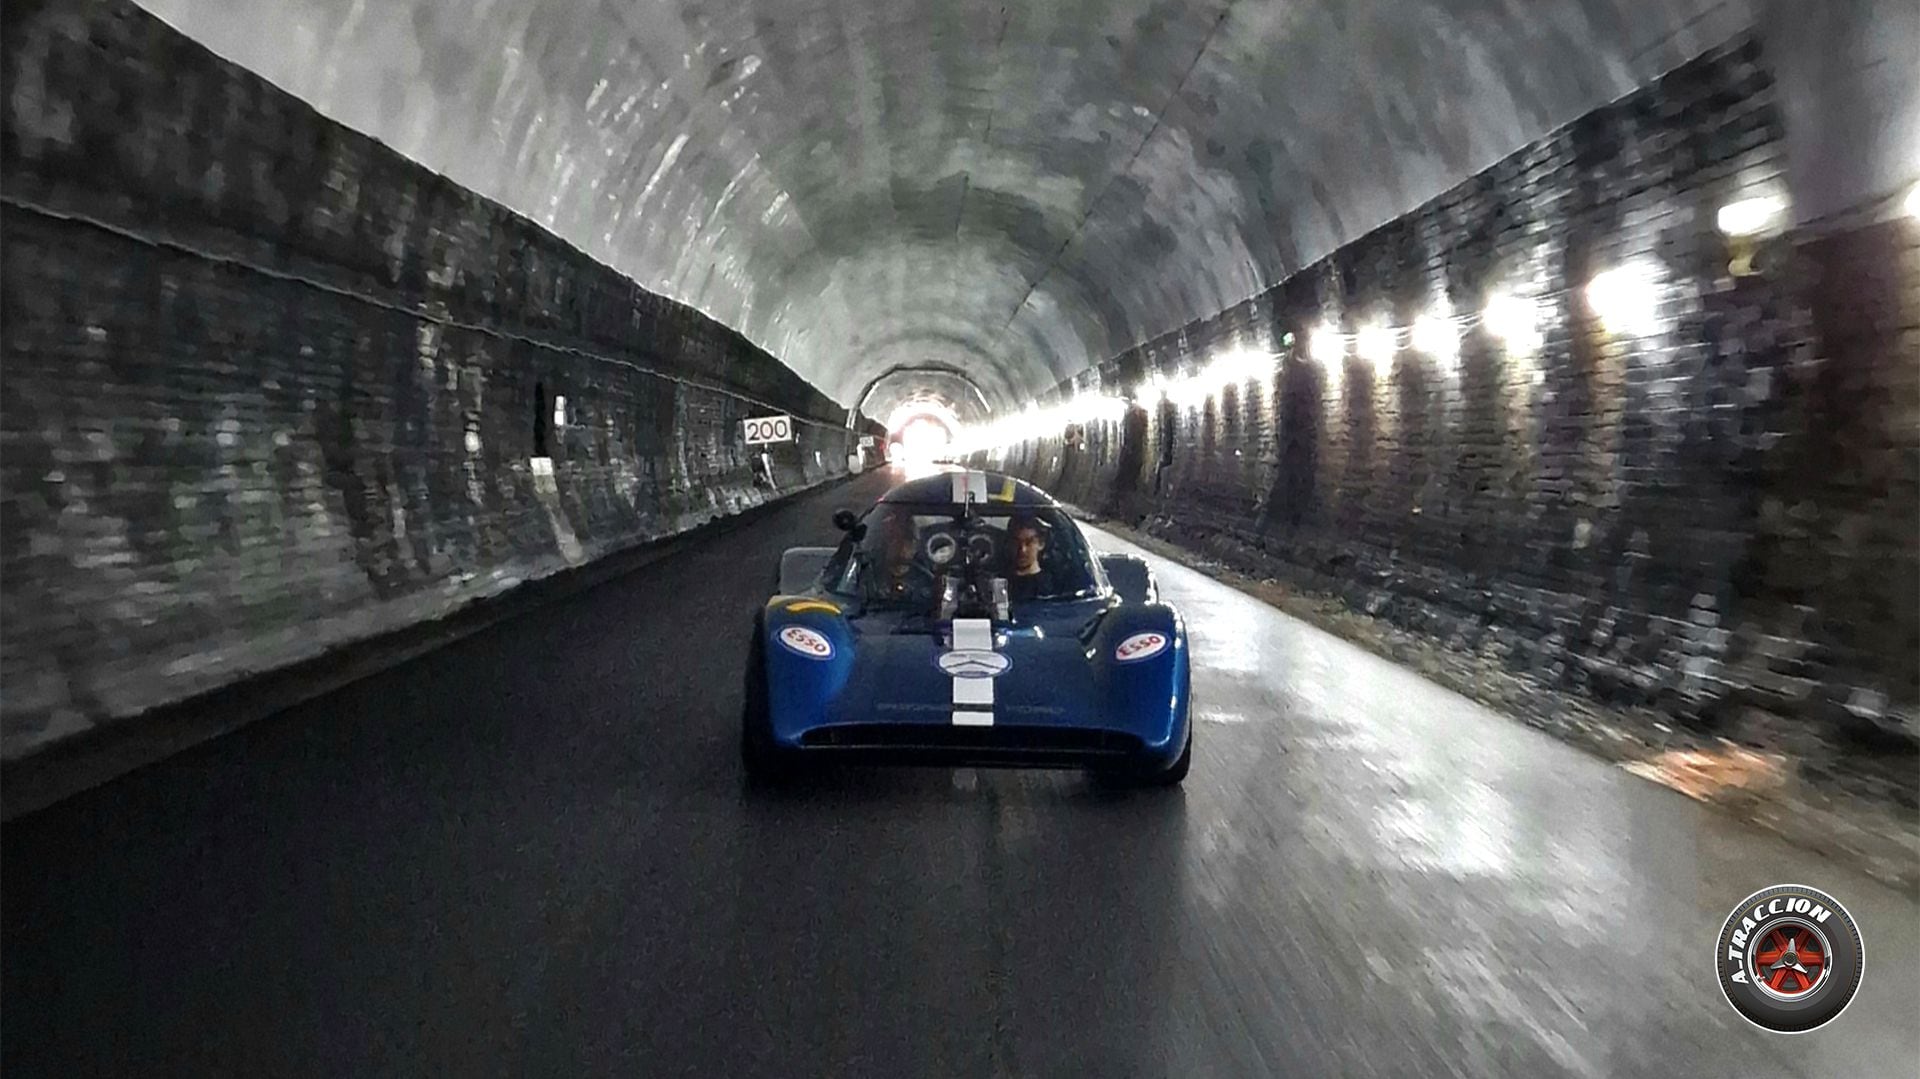 Catesby es un túnel real que perteneció al ferrocarril, donde se pueden medir los autos en funcionamiento. (Foto: Gabriel de Meurville @a_traccion)